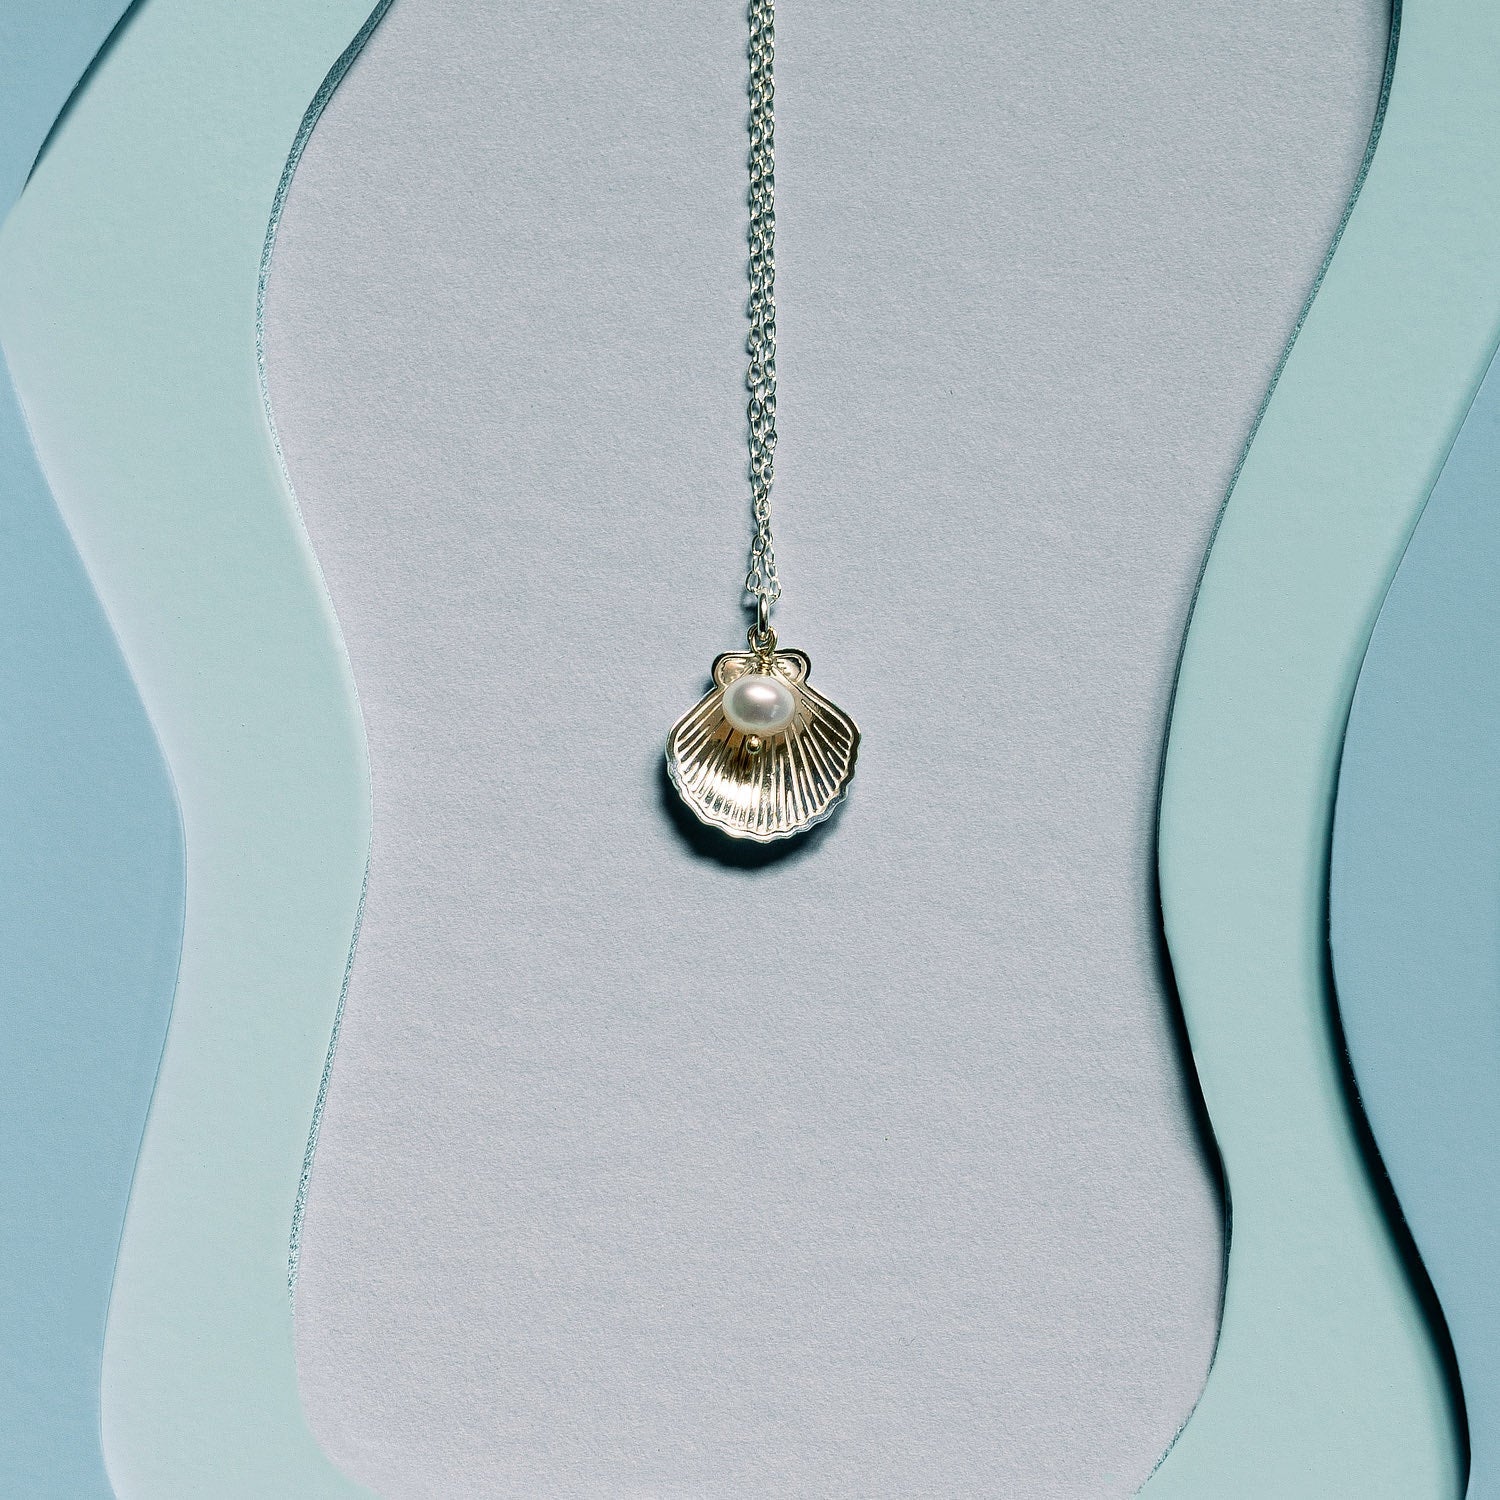 Fan shell & pearl pendant necklace - Simone Walsh Jewellery Australia